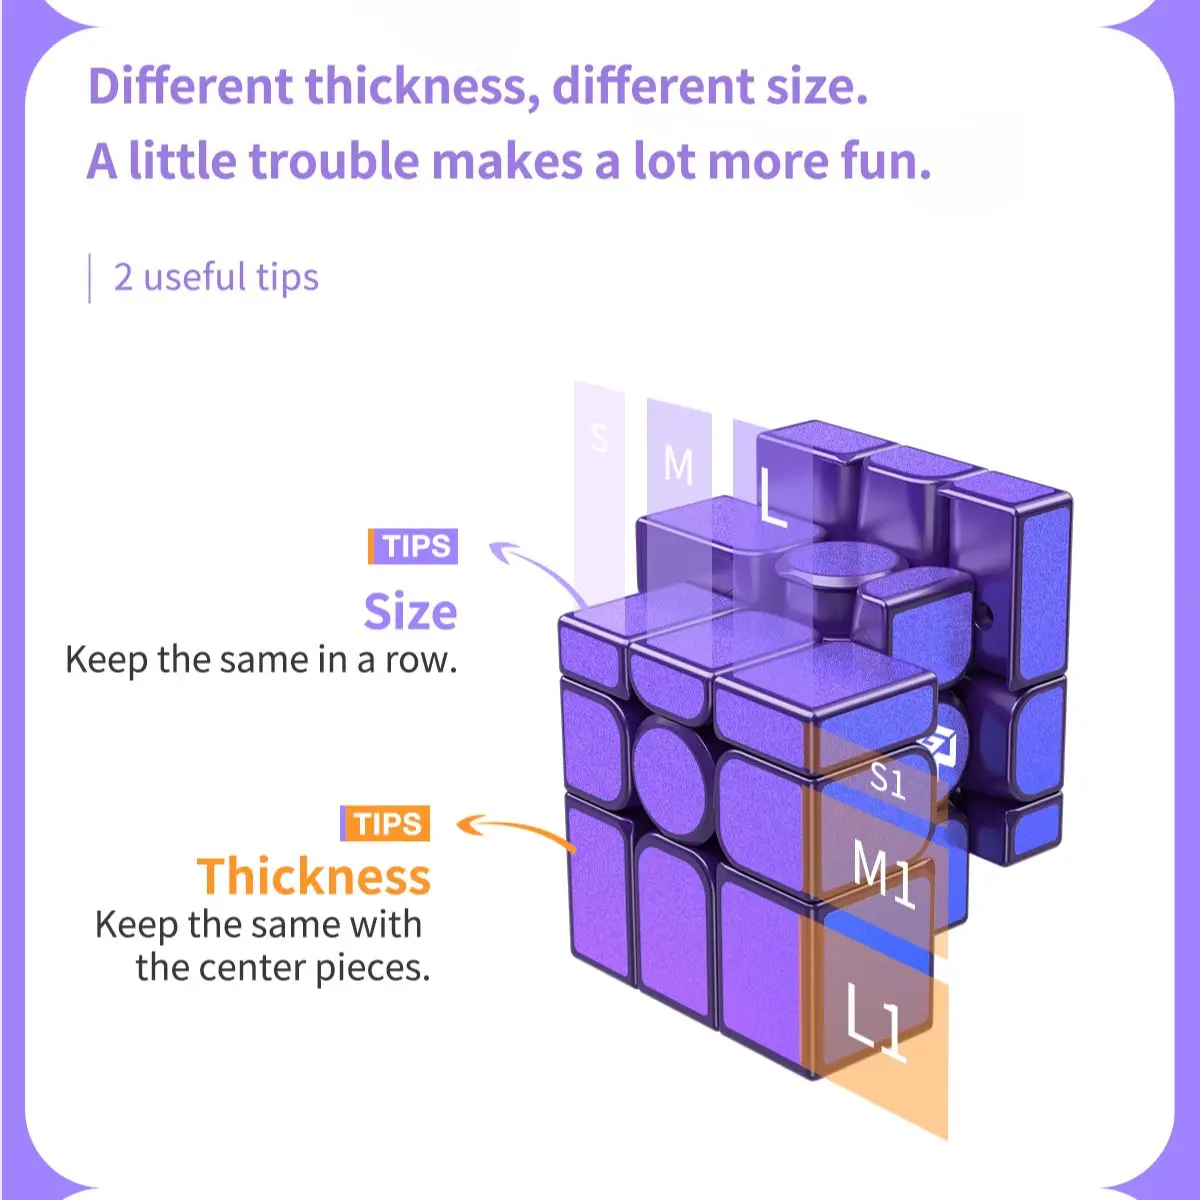 [Picube] Gan 3x3 зеркальный куб 3X3x3 магнитный кубик